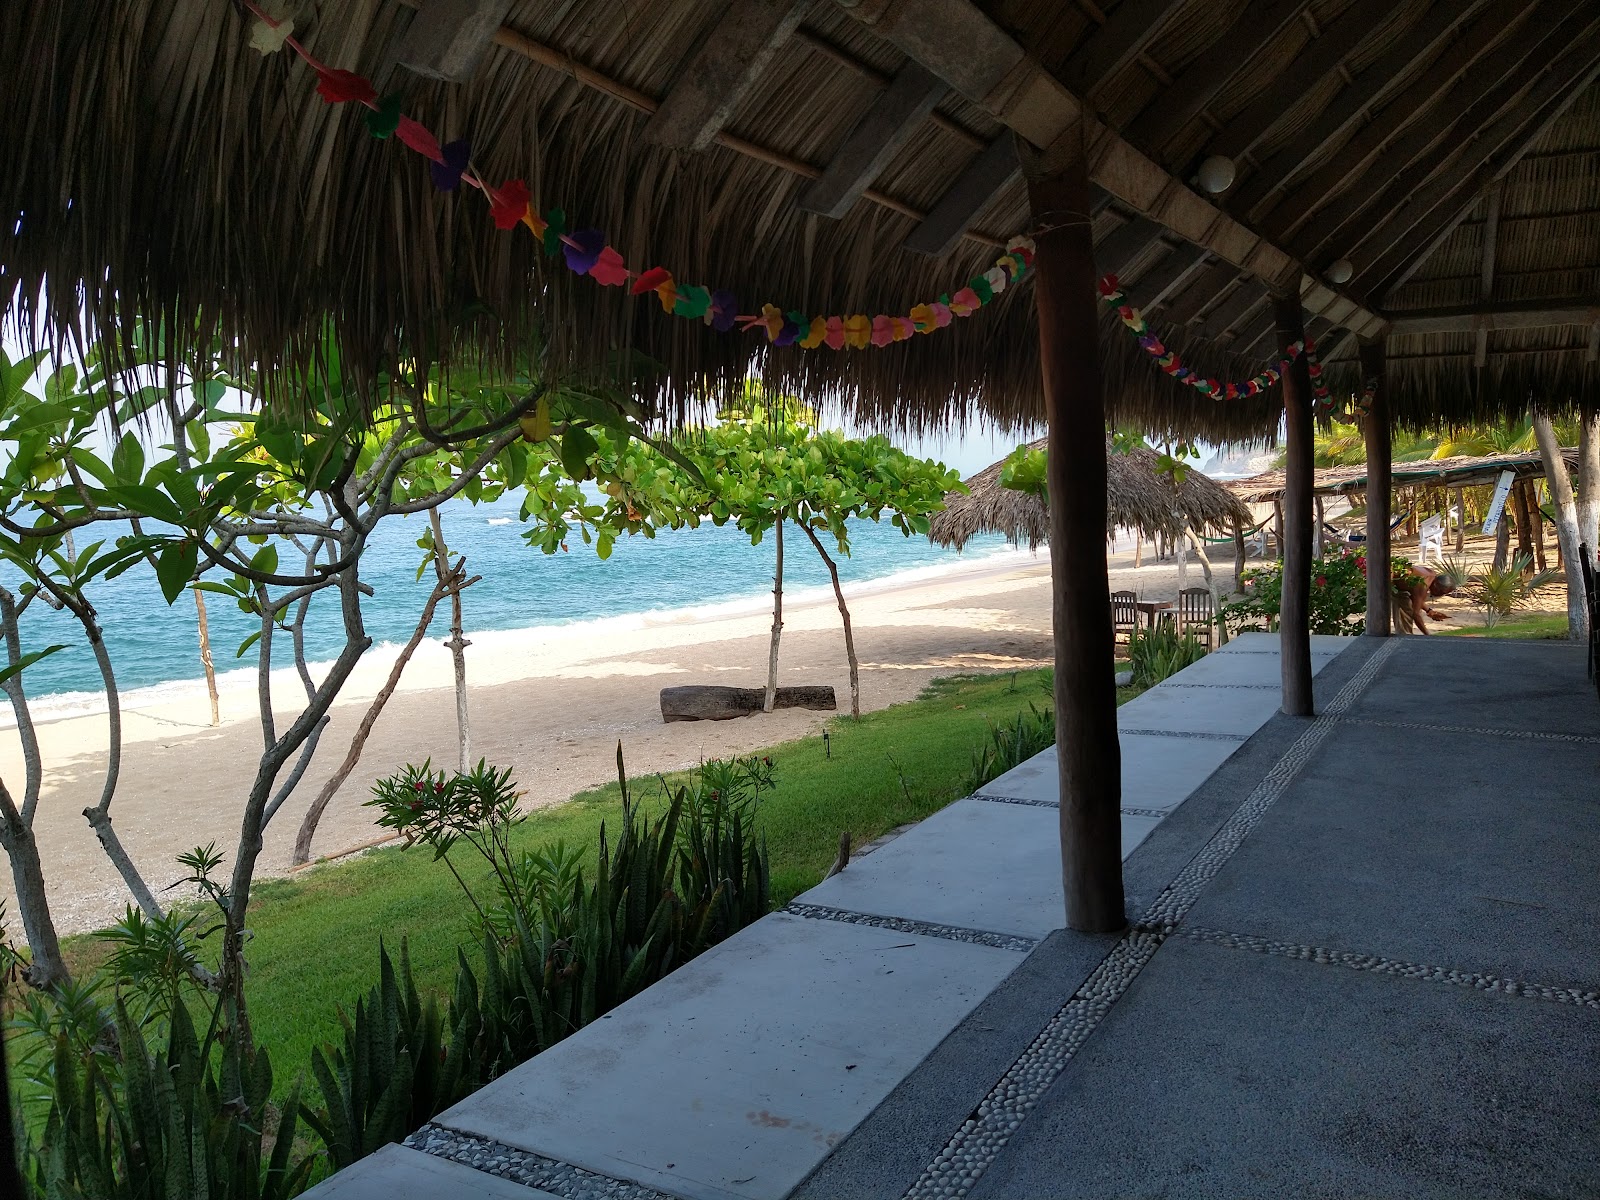 Photo de Playa La Palma Sola - endroit populaire parmi les connaisseurs de la détente